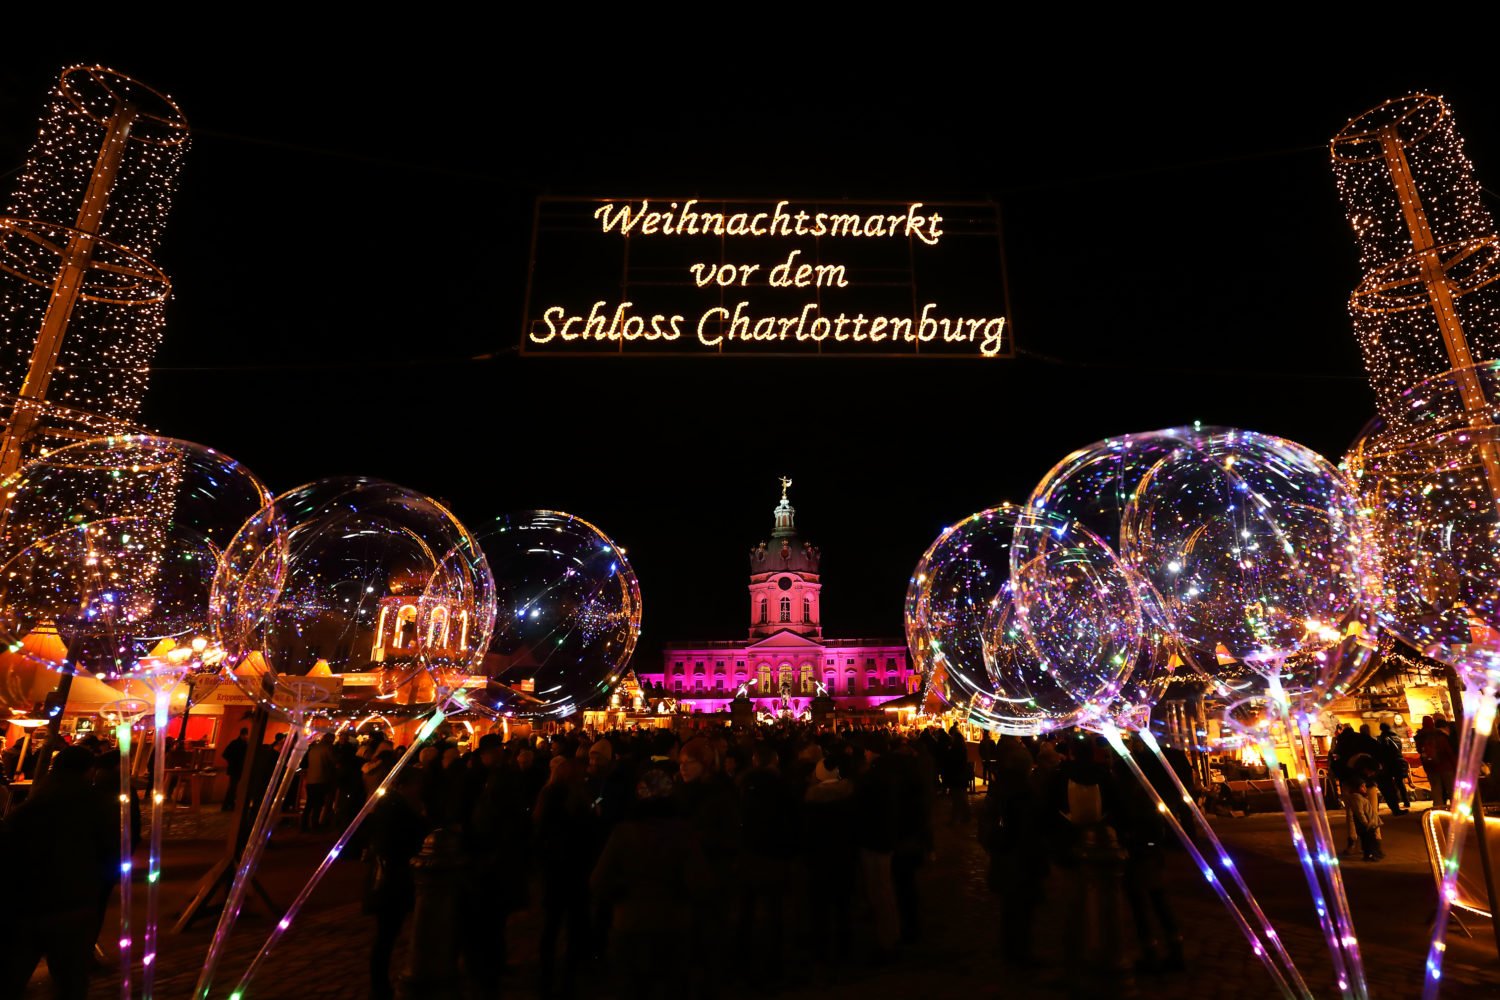 Das Schloss Charlottenburg und ein wunderschöner Weihnachtsmarkt in Berlin. Foto: Imago Images/Müller-Stauffenberg